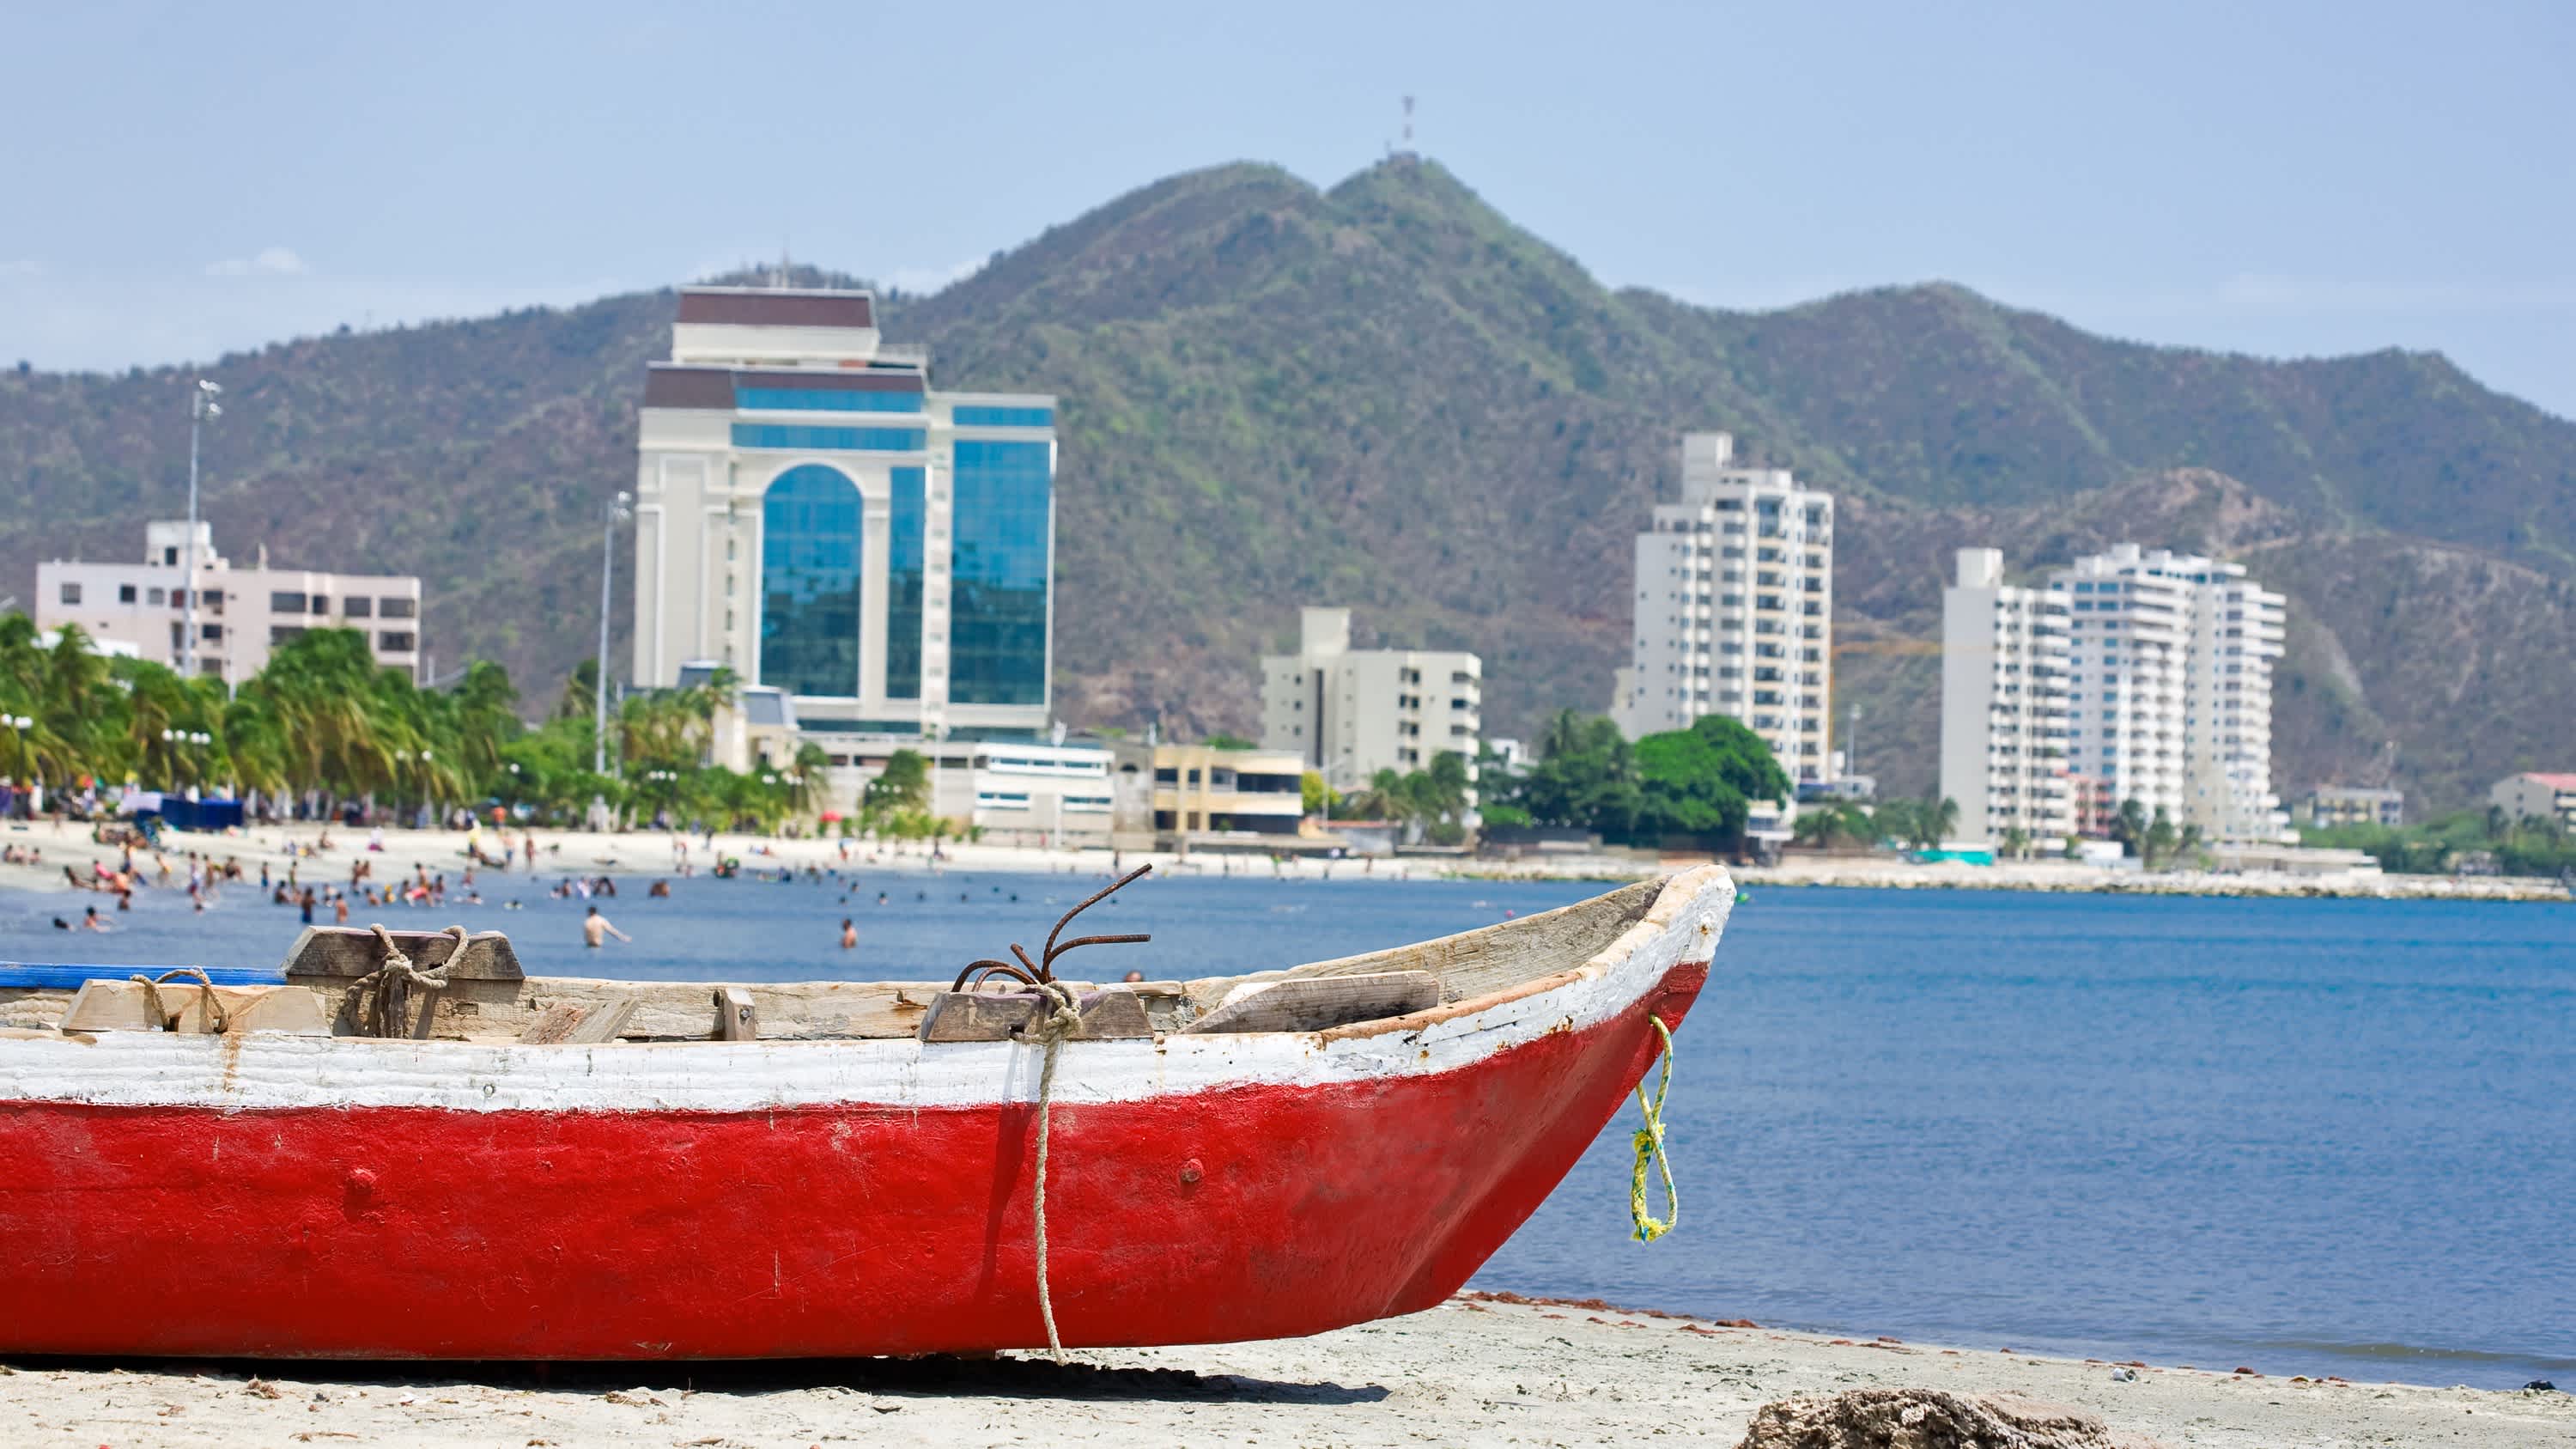  Playa Rodadero in Santa Marta, Kolumbien mit einem roten Boot im Vordergrund sowie dem Strand, der Bucht und Hochhäusern im Hintergrund.